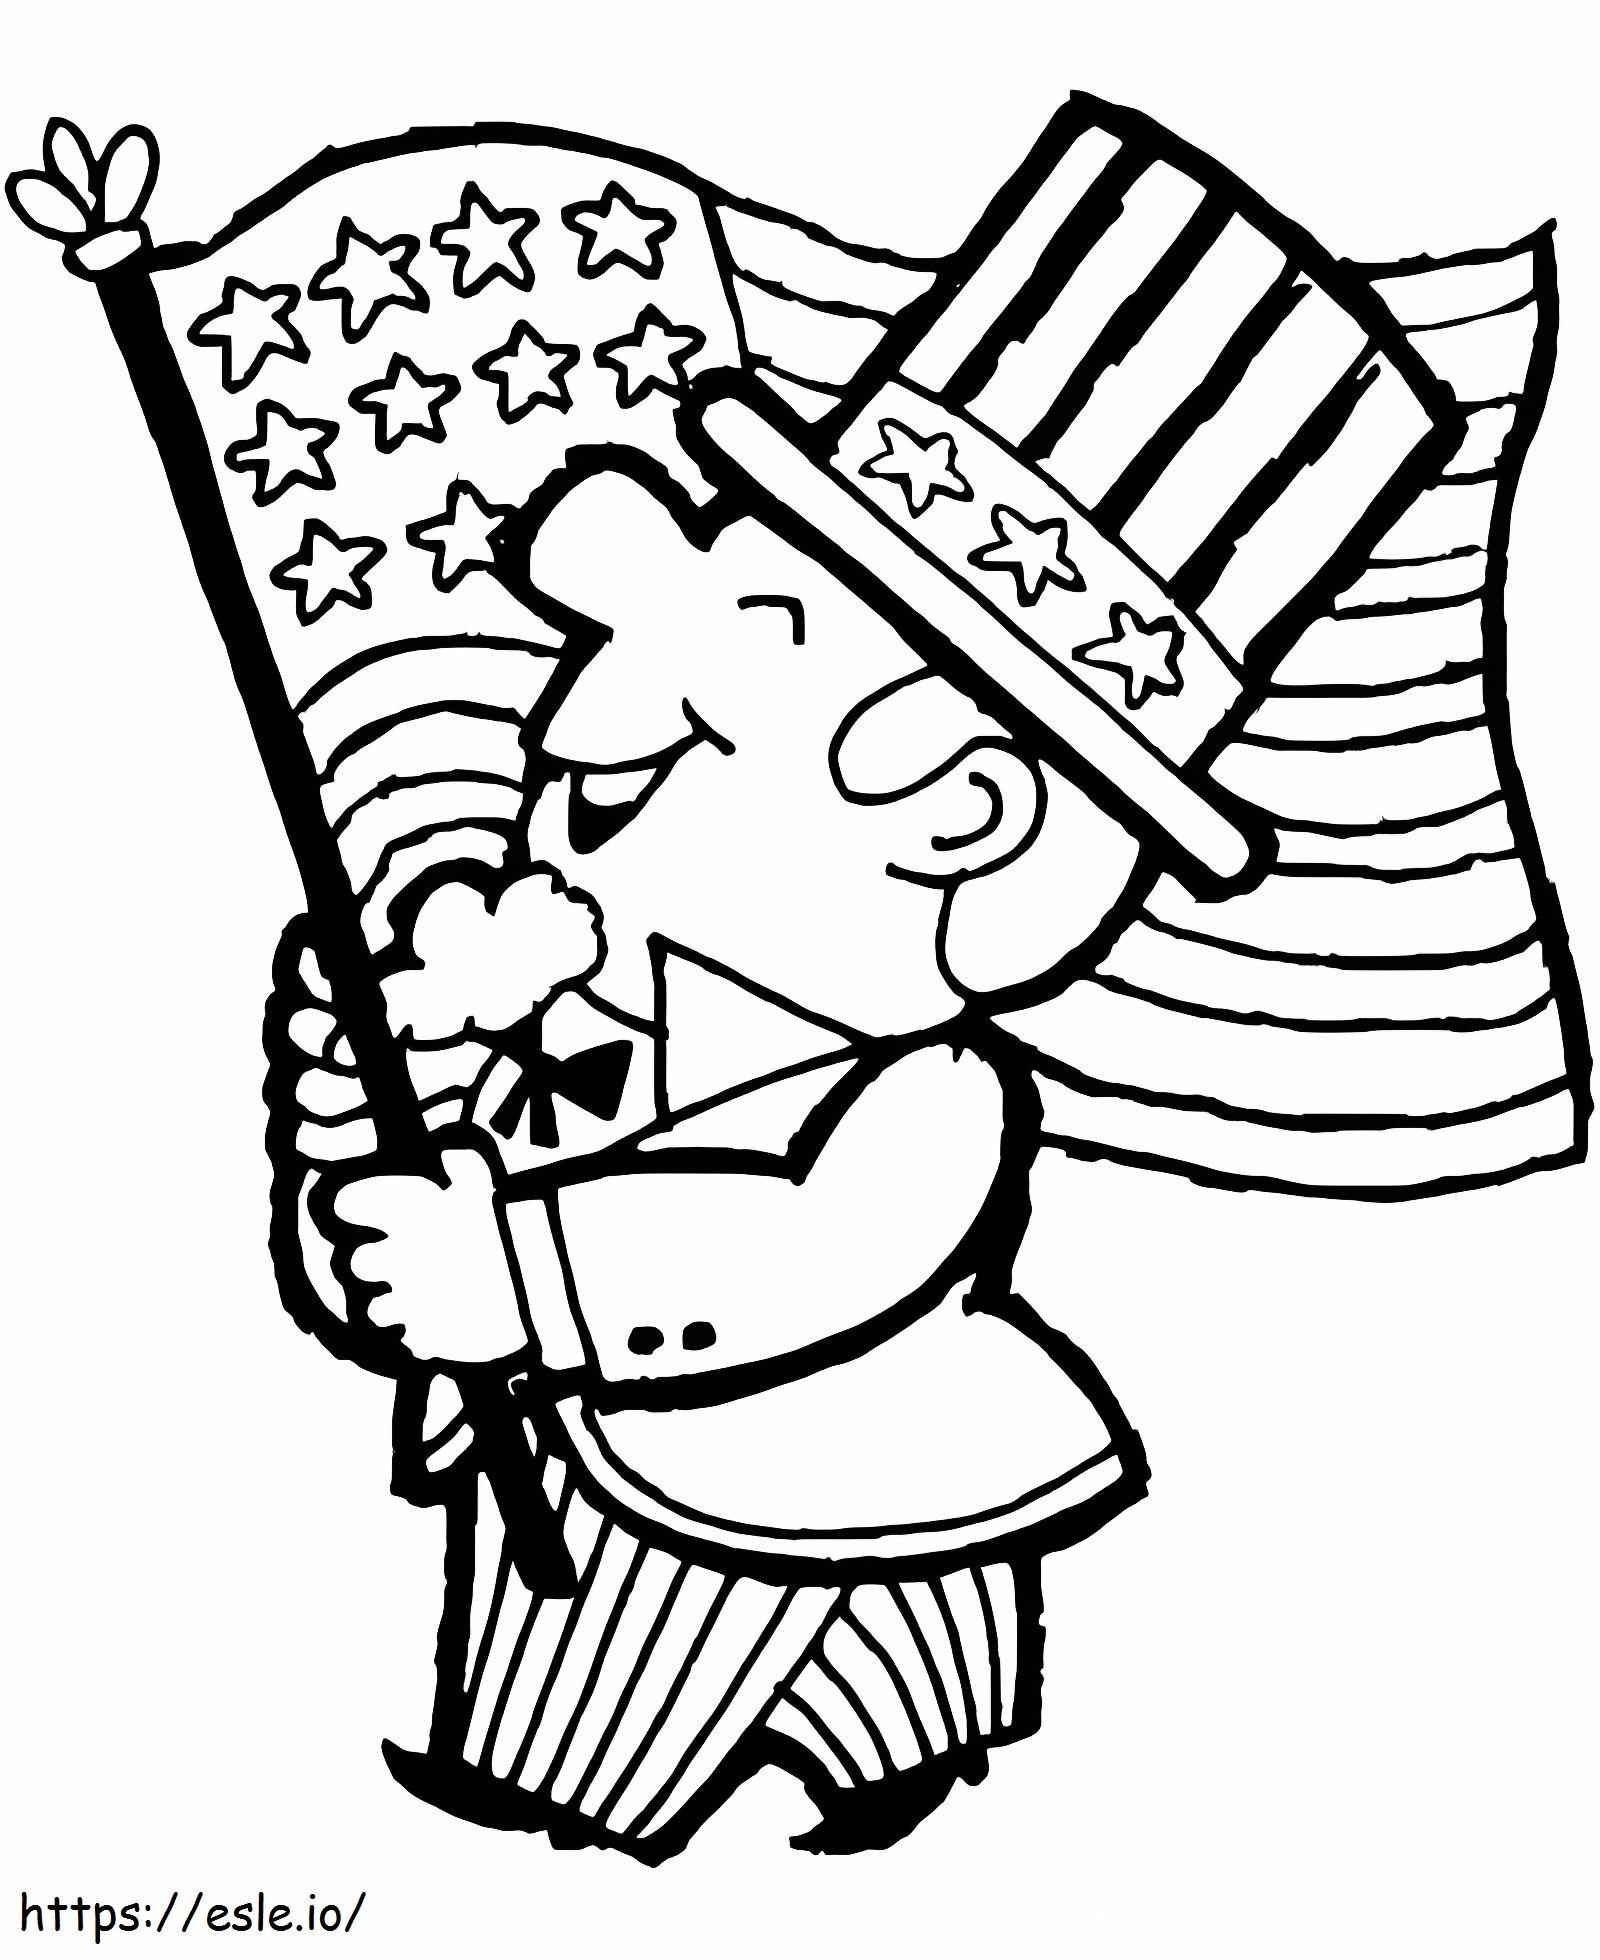 Mann mit amerikanischer Flagge ausmalbilder